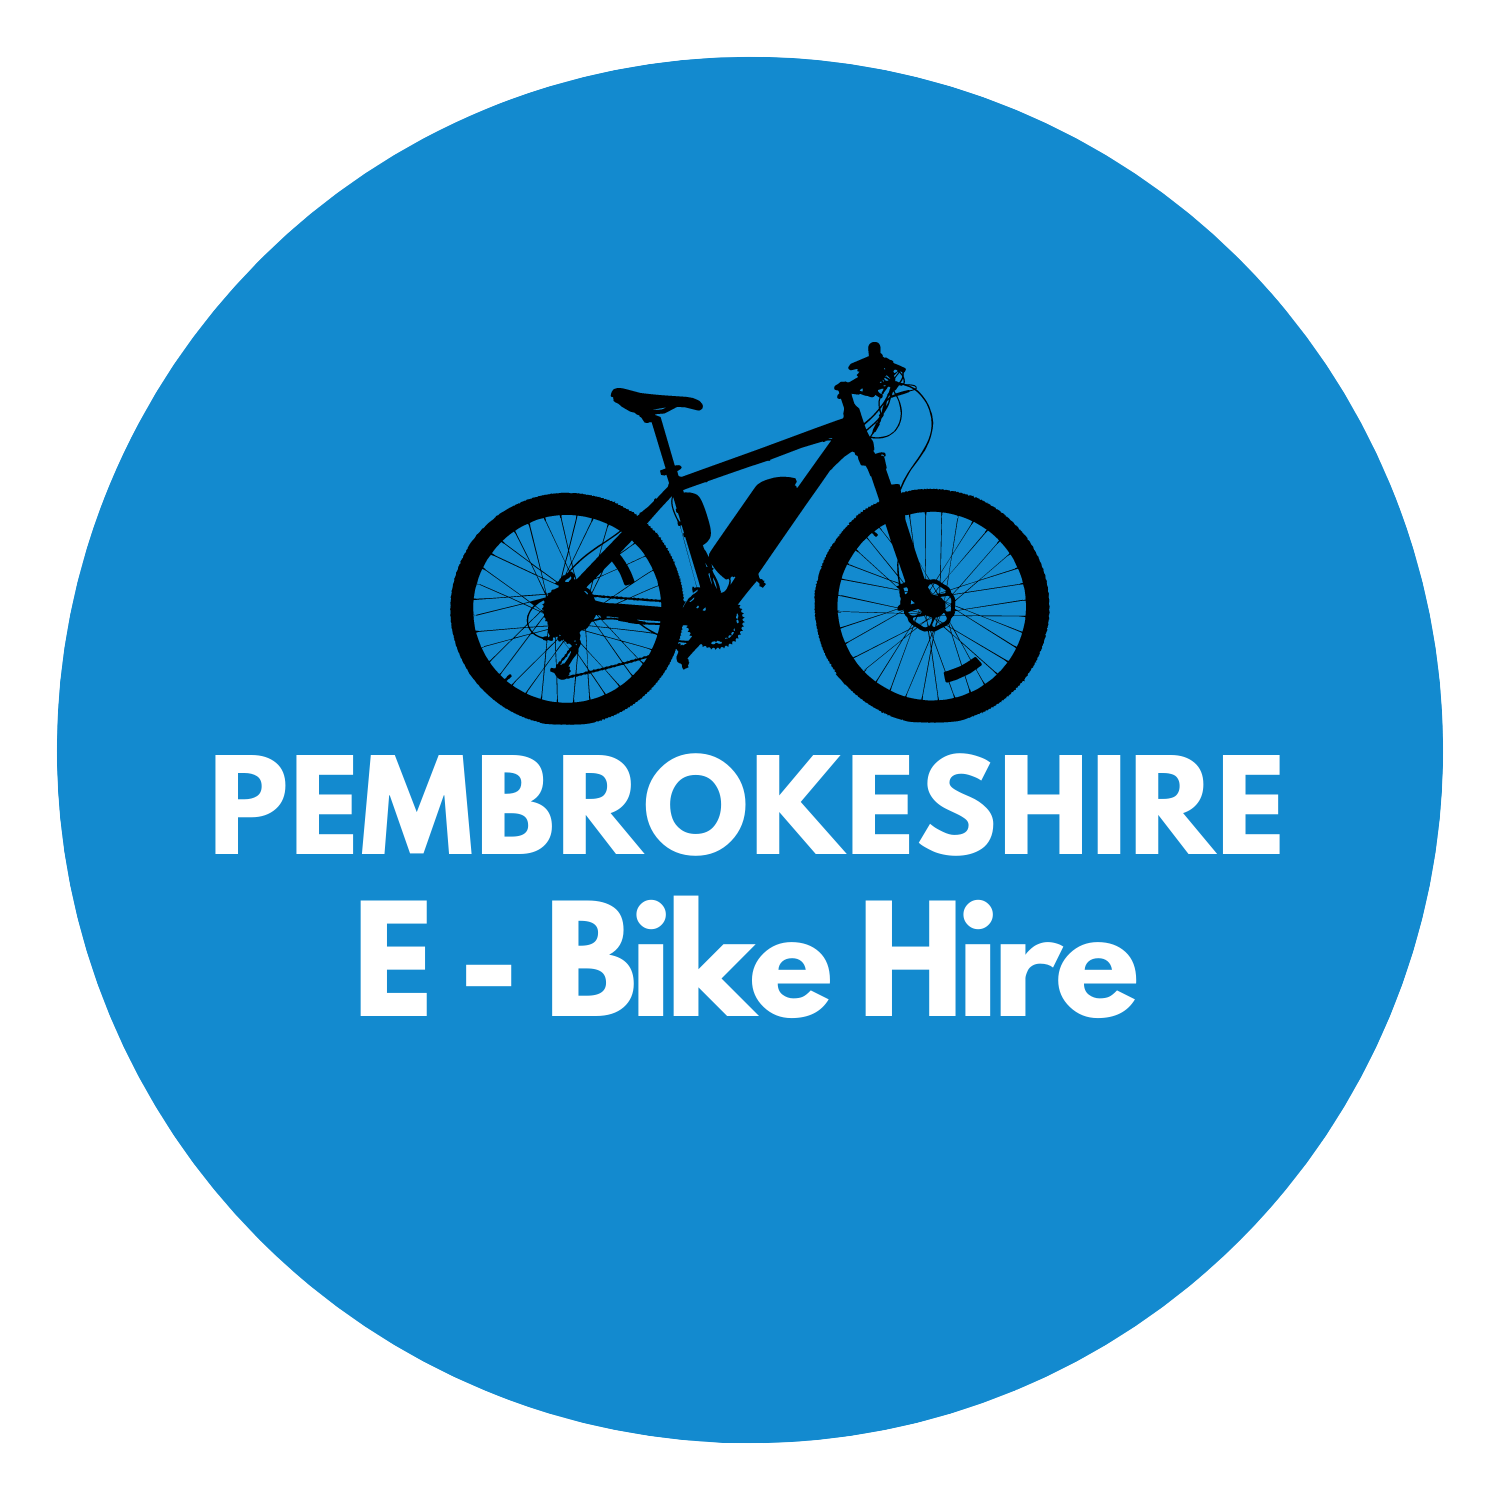 Pembrokeshire E-Bike Hire